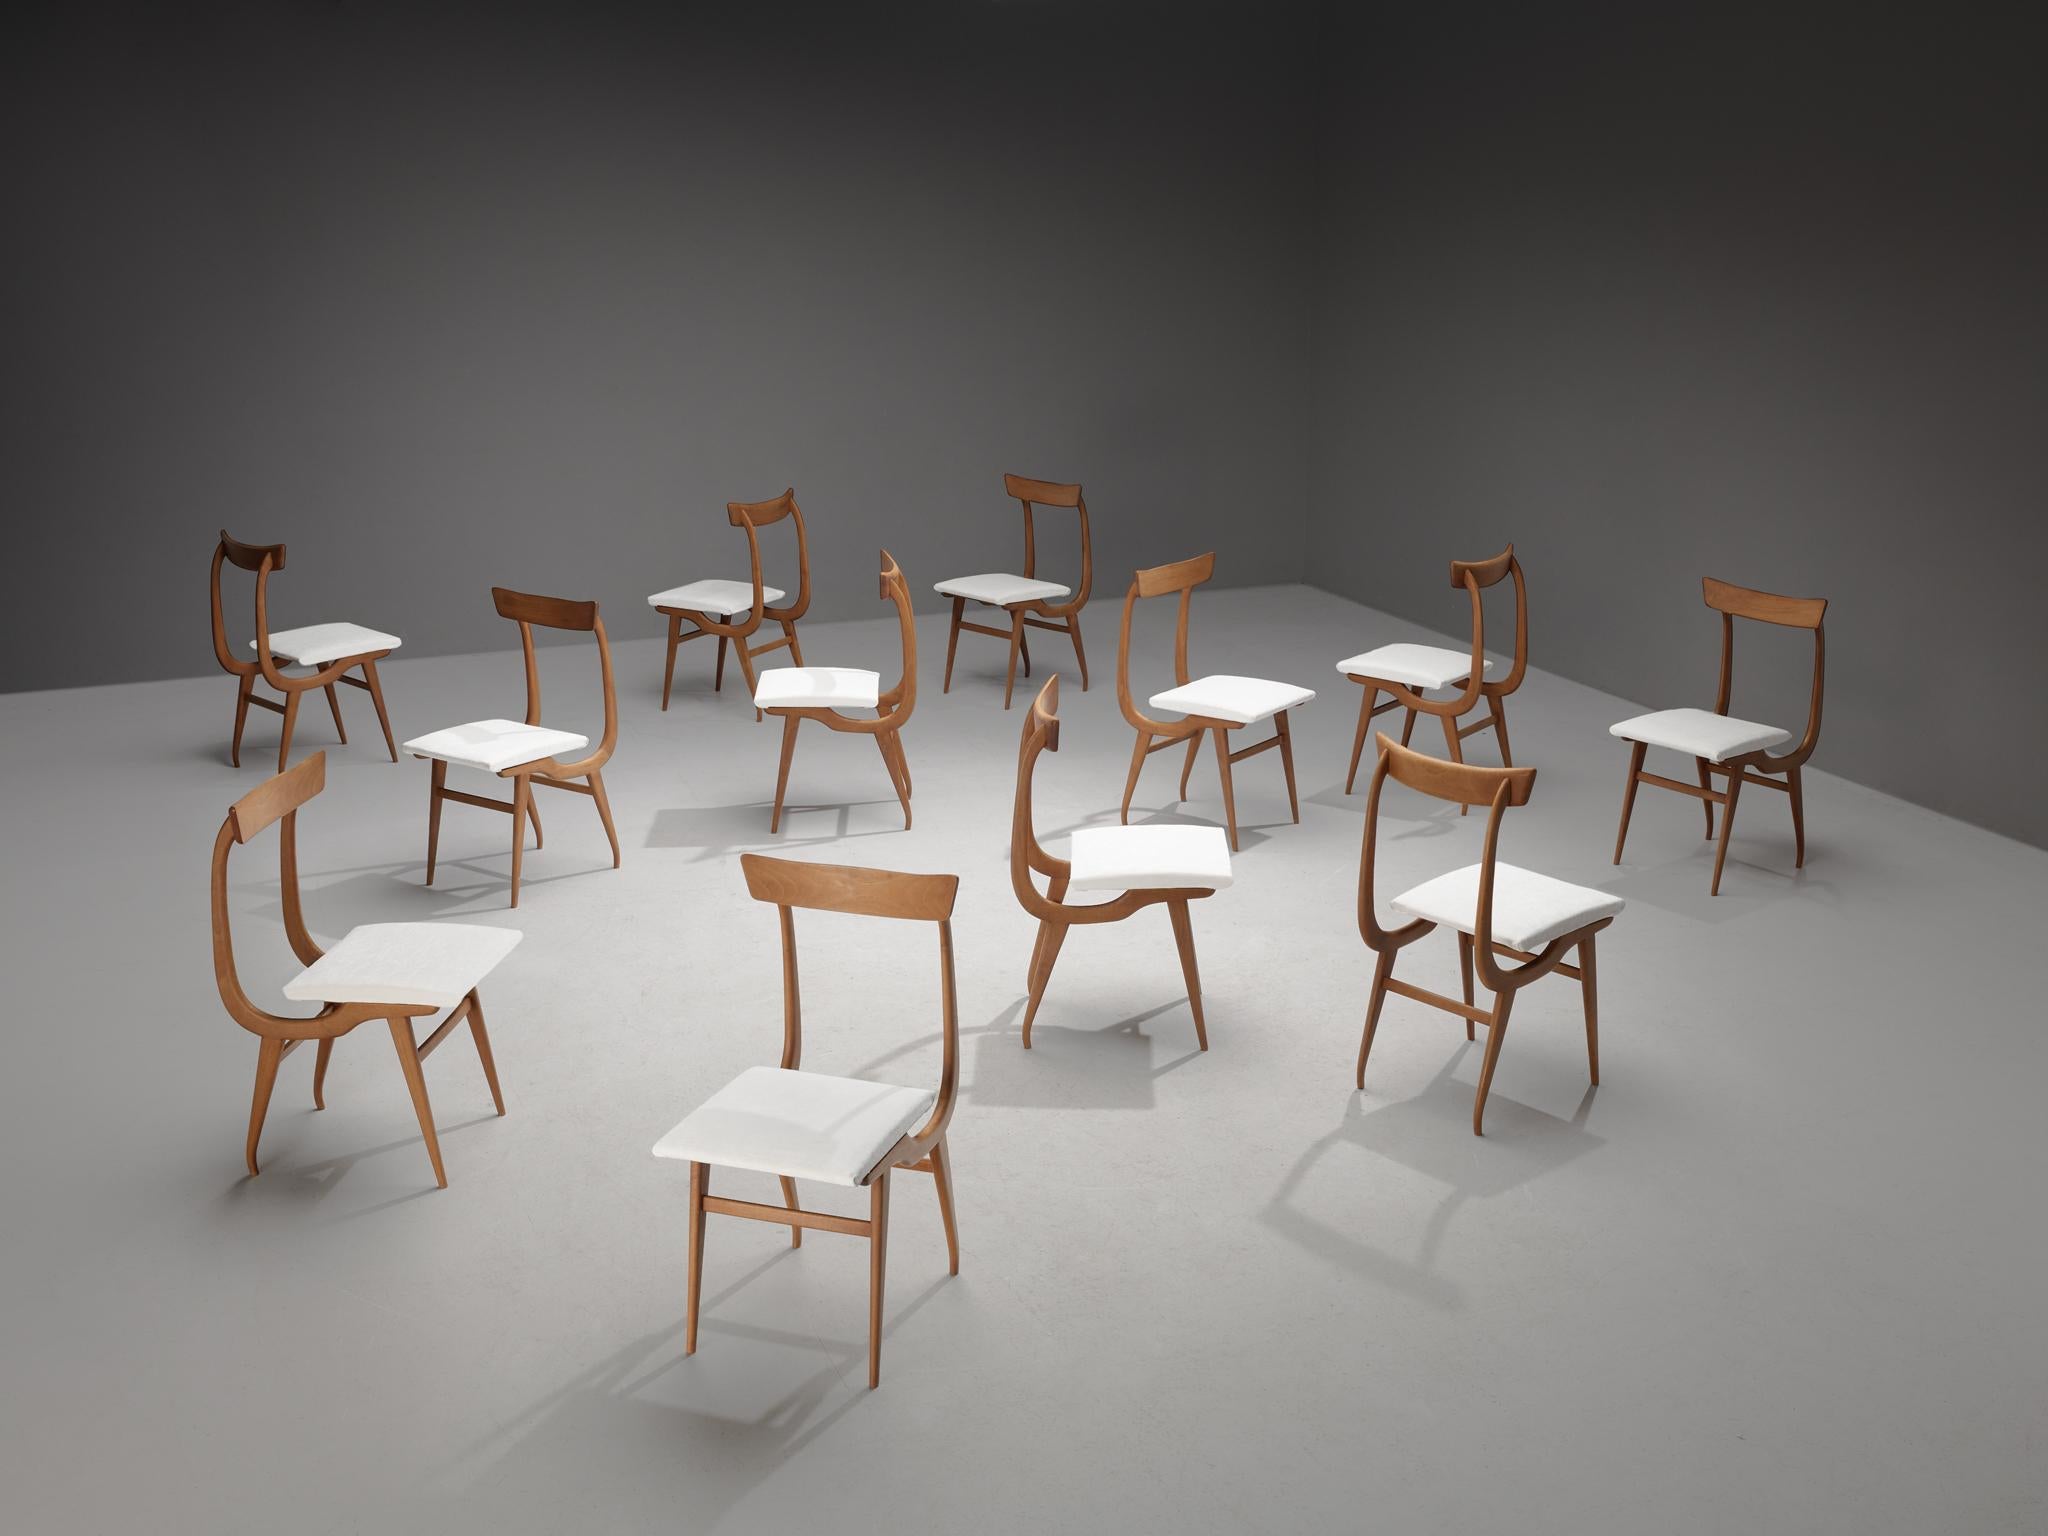 Ensemble de douze chaises de salle à manger, noyer, tissu : Dedar Belsuede col.8 pierre d'argent, Italie, années 1960

Ces chaises italiennes ont une apparence dynamique qui se manifeste, par exemple, dans le cadre organique de forme incurvée. Un